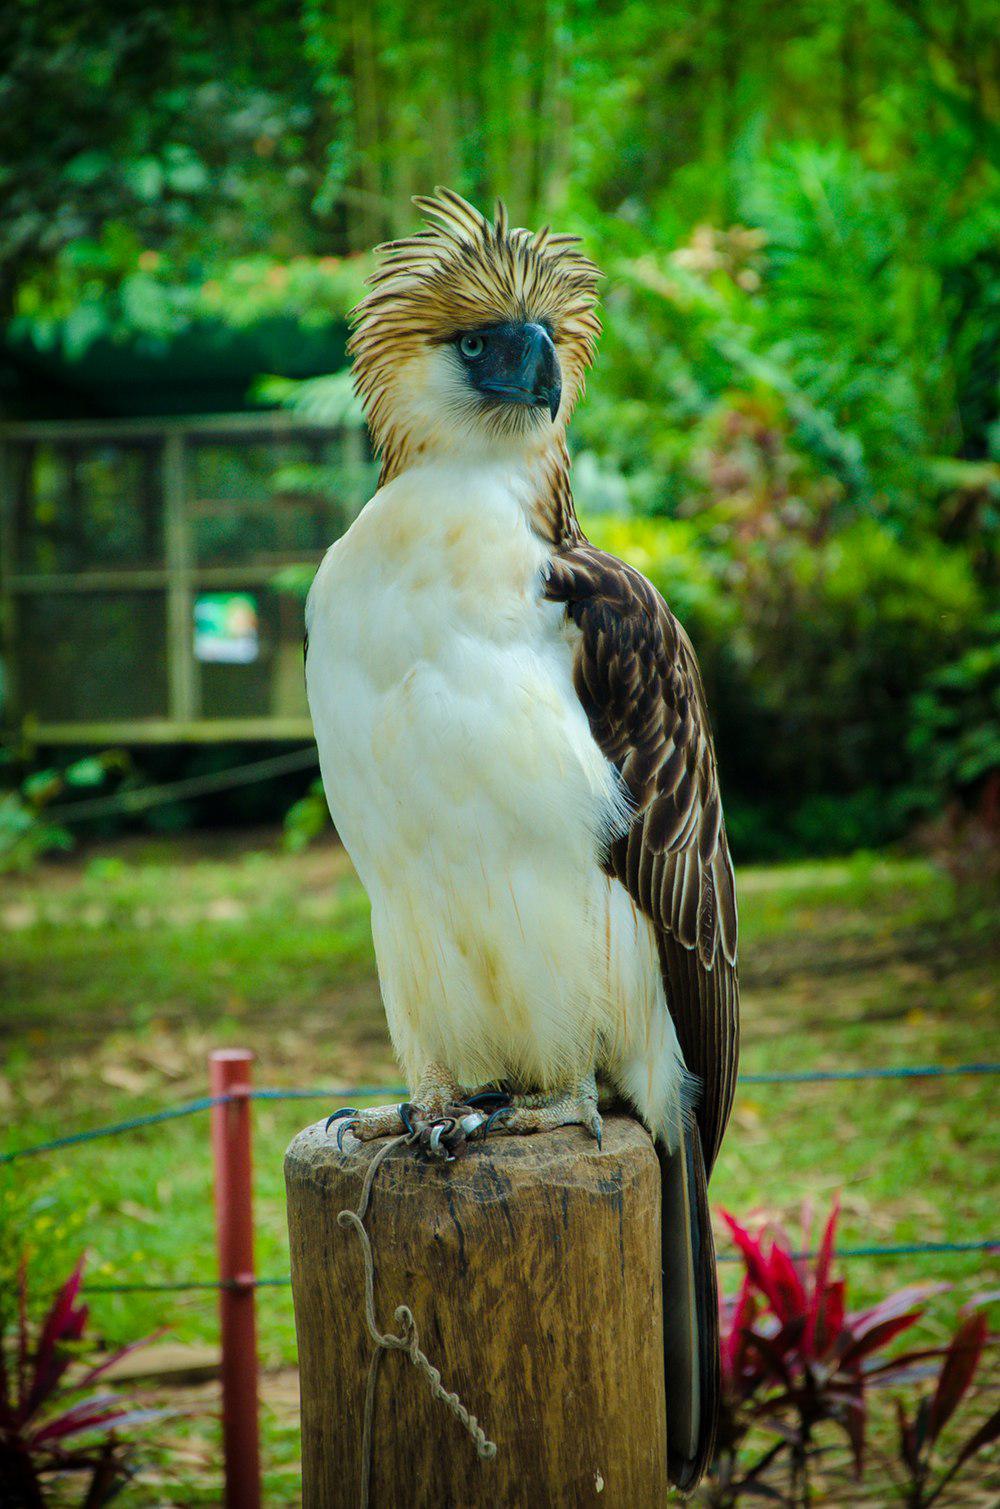 菲律宾雕 / Philippine Eagle / Pithecophaga jefferyi